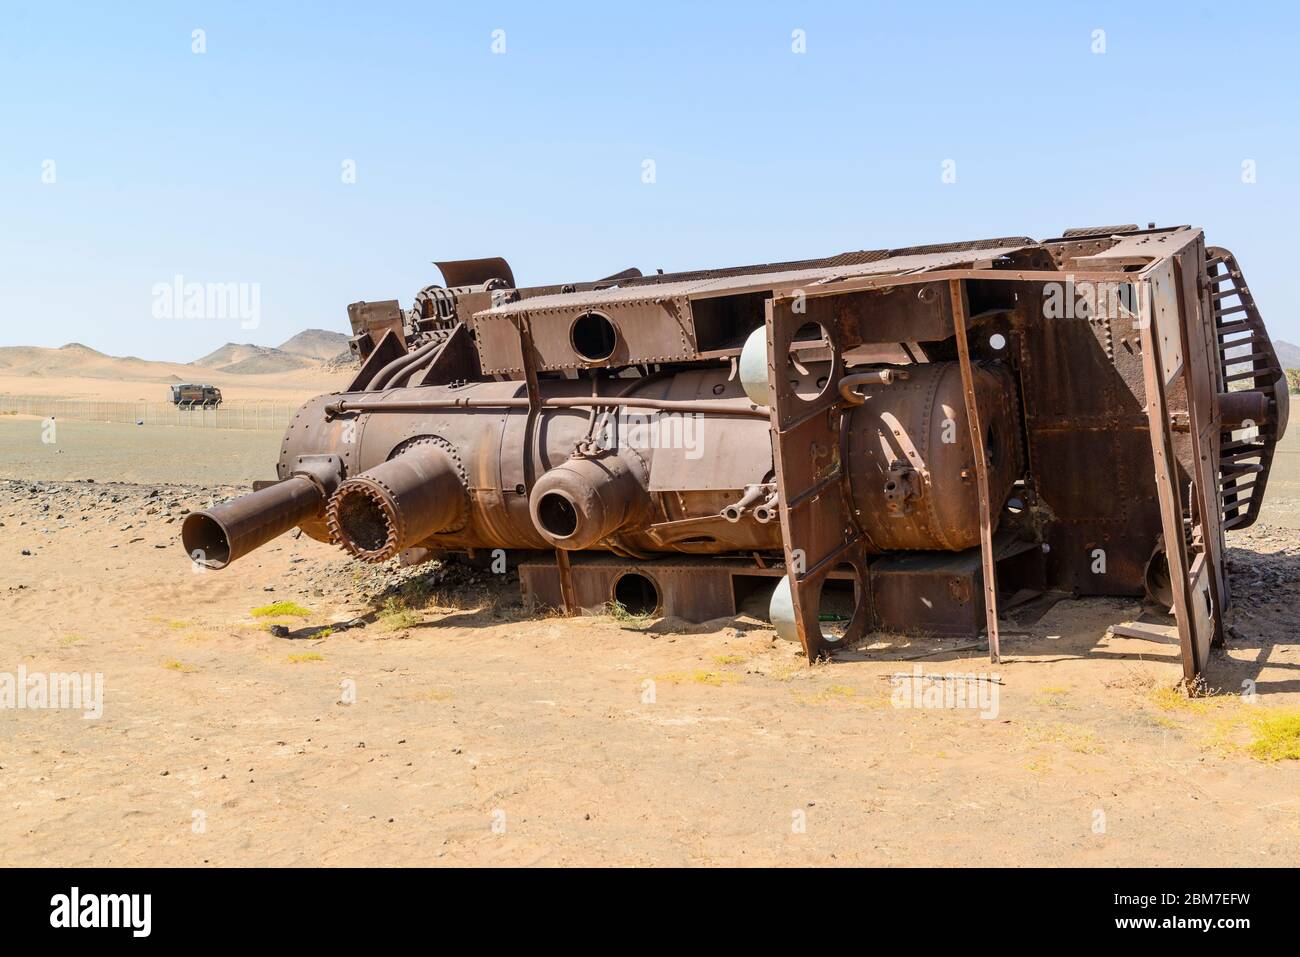 Der Zug wurde auf der historischen osmanischen Hejaz-Eisenbahn in Hadyjah, Saudi-Arabien, gesprengt Stockfoto